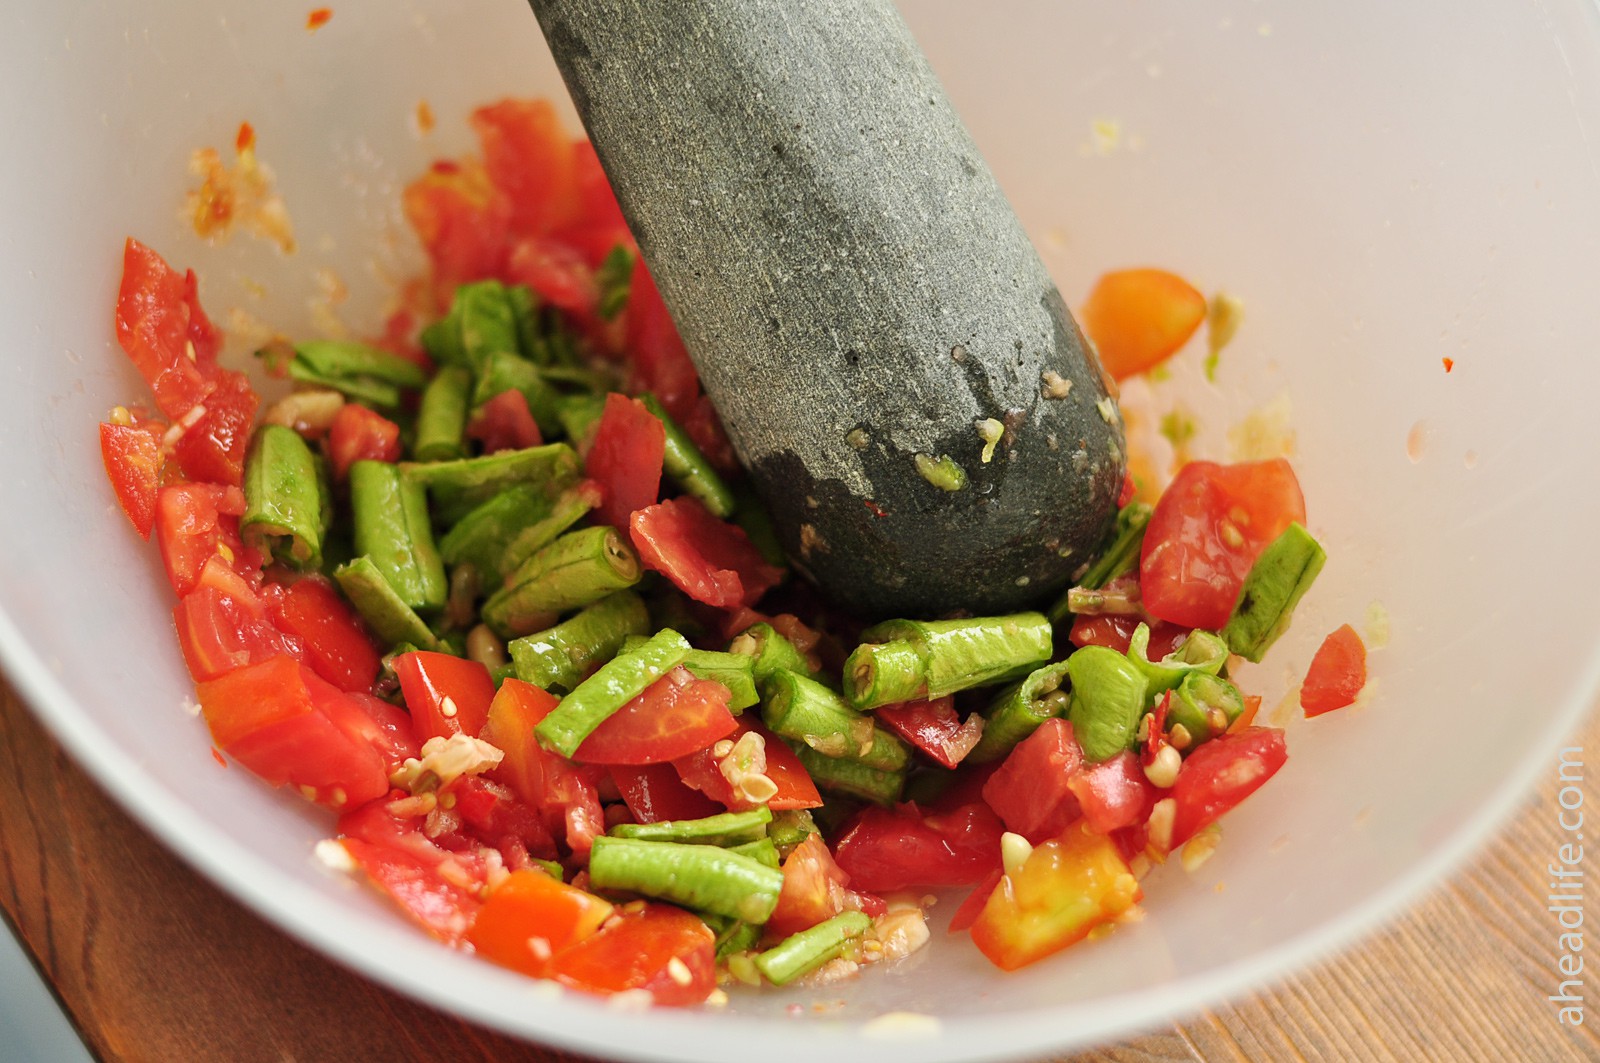 Салат из папайи Сам Том: как готовить